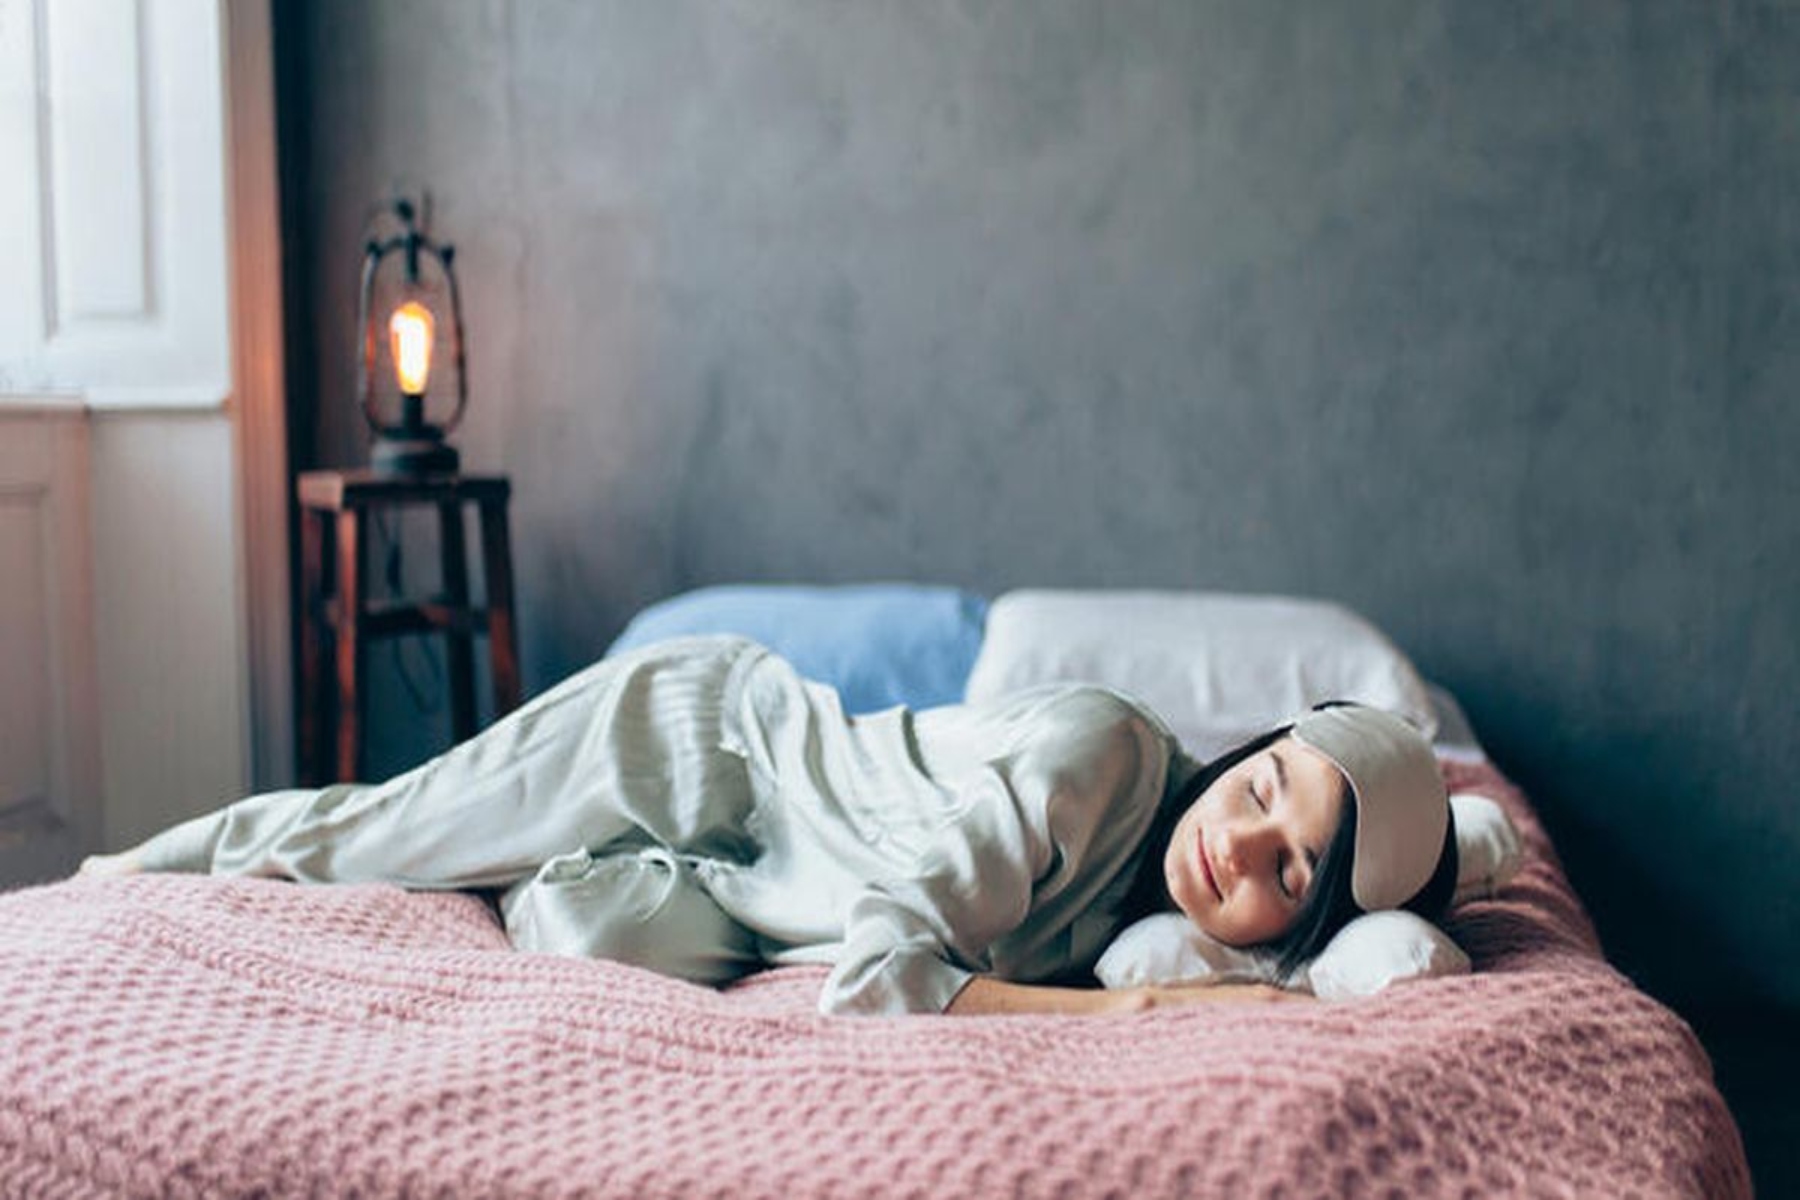 Ύπνος σκέψεις: Πώς μπορώ να σταματήσω να σκέφτομαι υπερβολικά πριν κοιμηθώ;